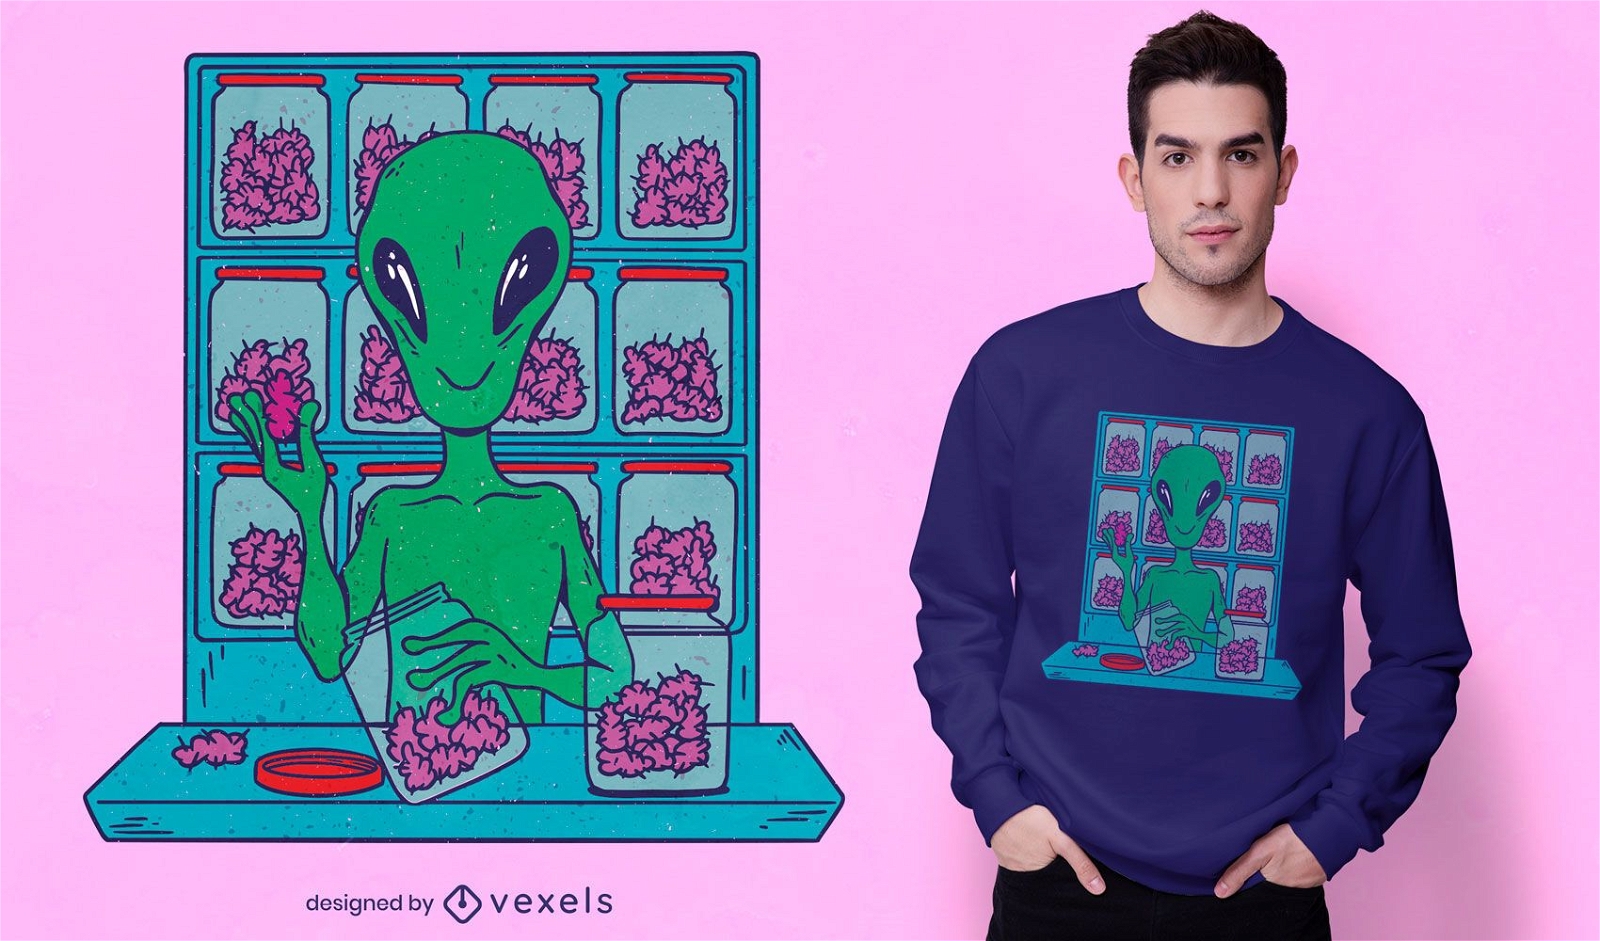 Espa?o alien?gena que vende design de camisetas com erva